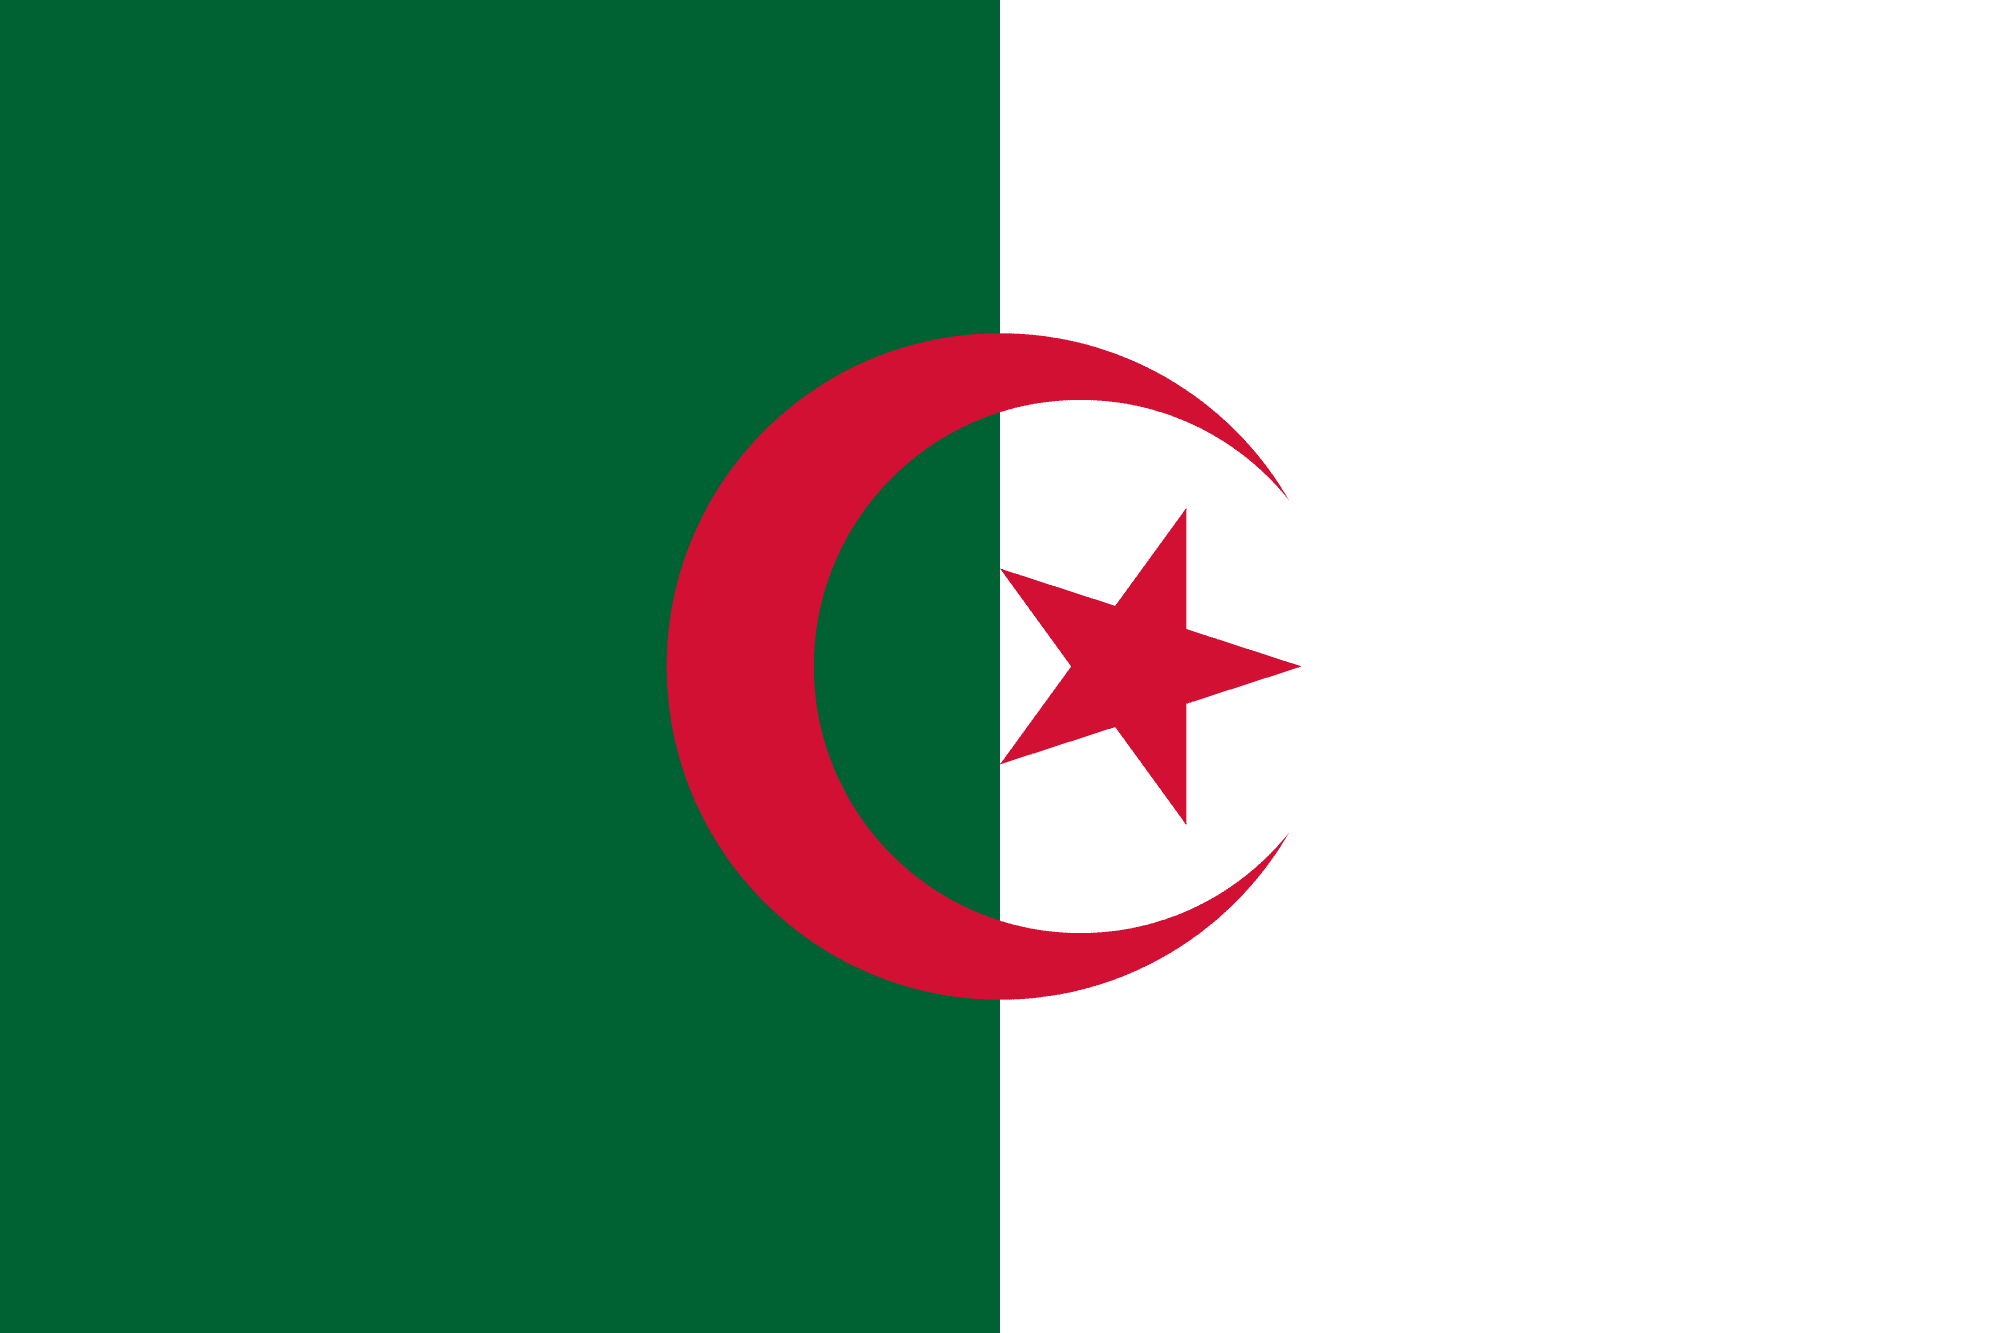 Algeria: Autonomous Workers Confederation Files ILO Complaint